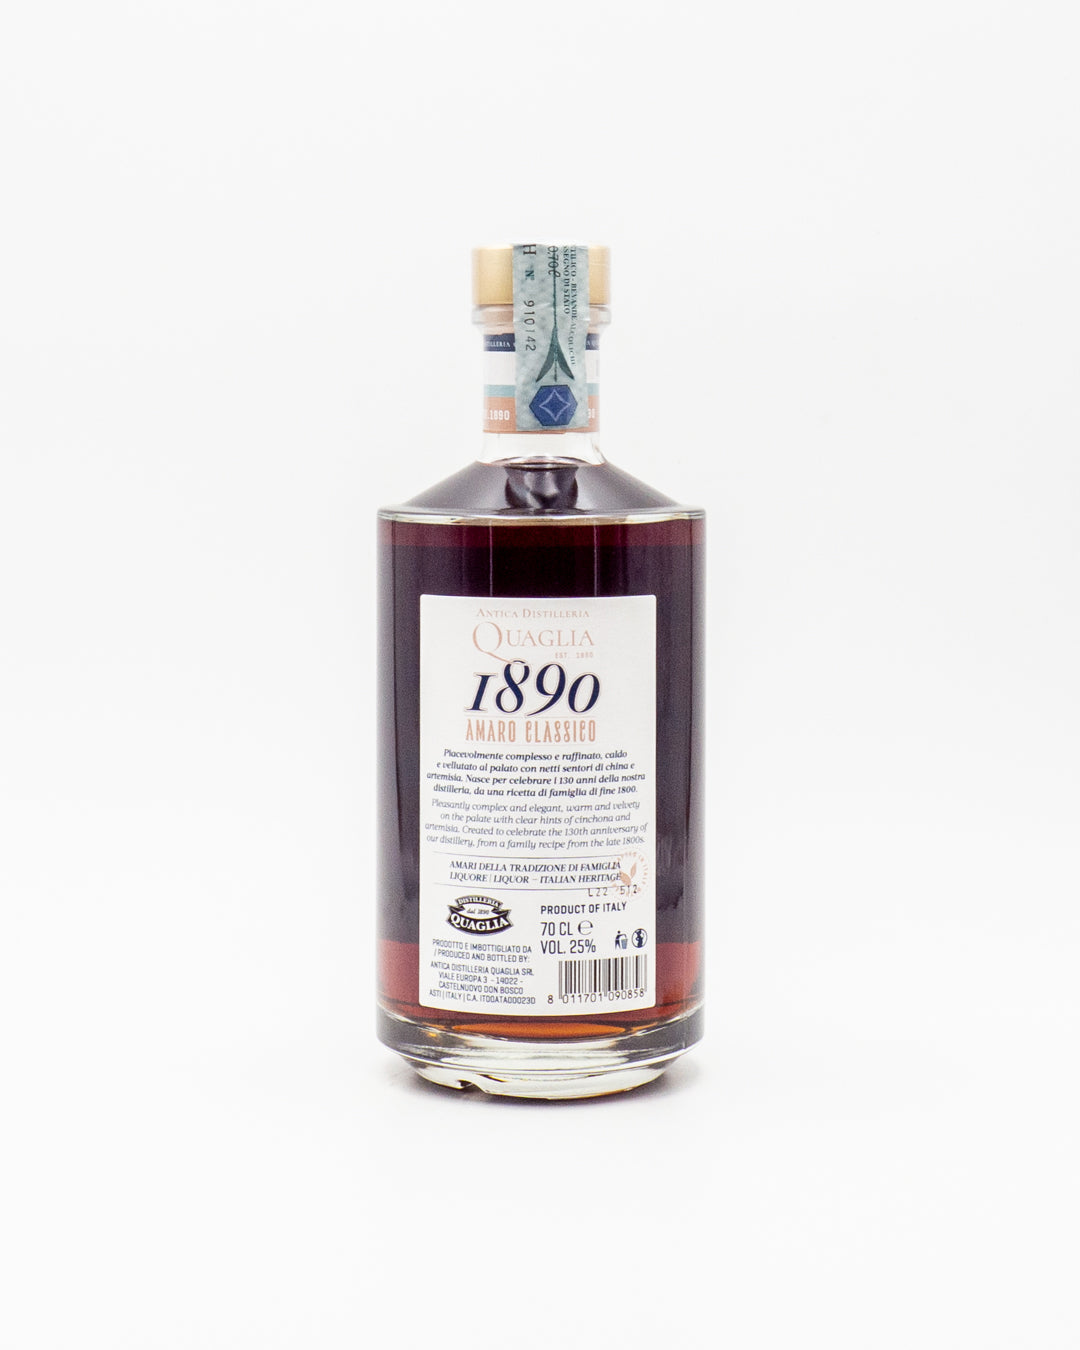 amaro-classico-1890-antica-distilleria-quaglia-25-0-70l